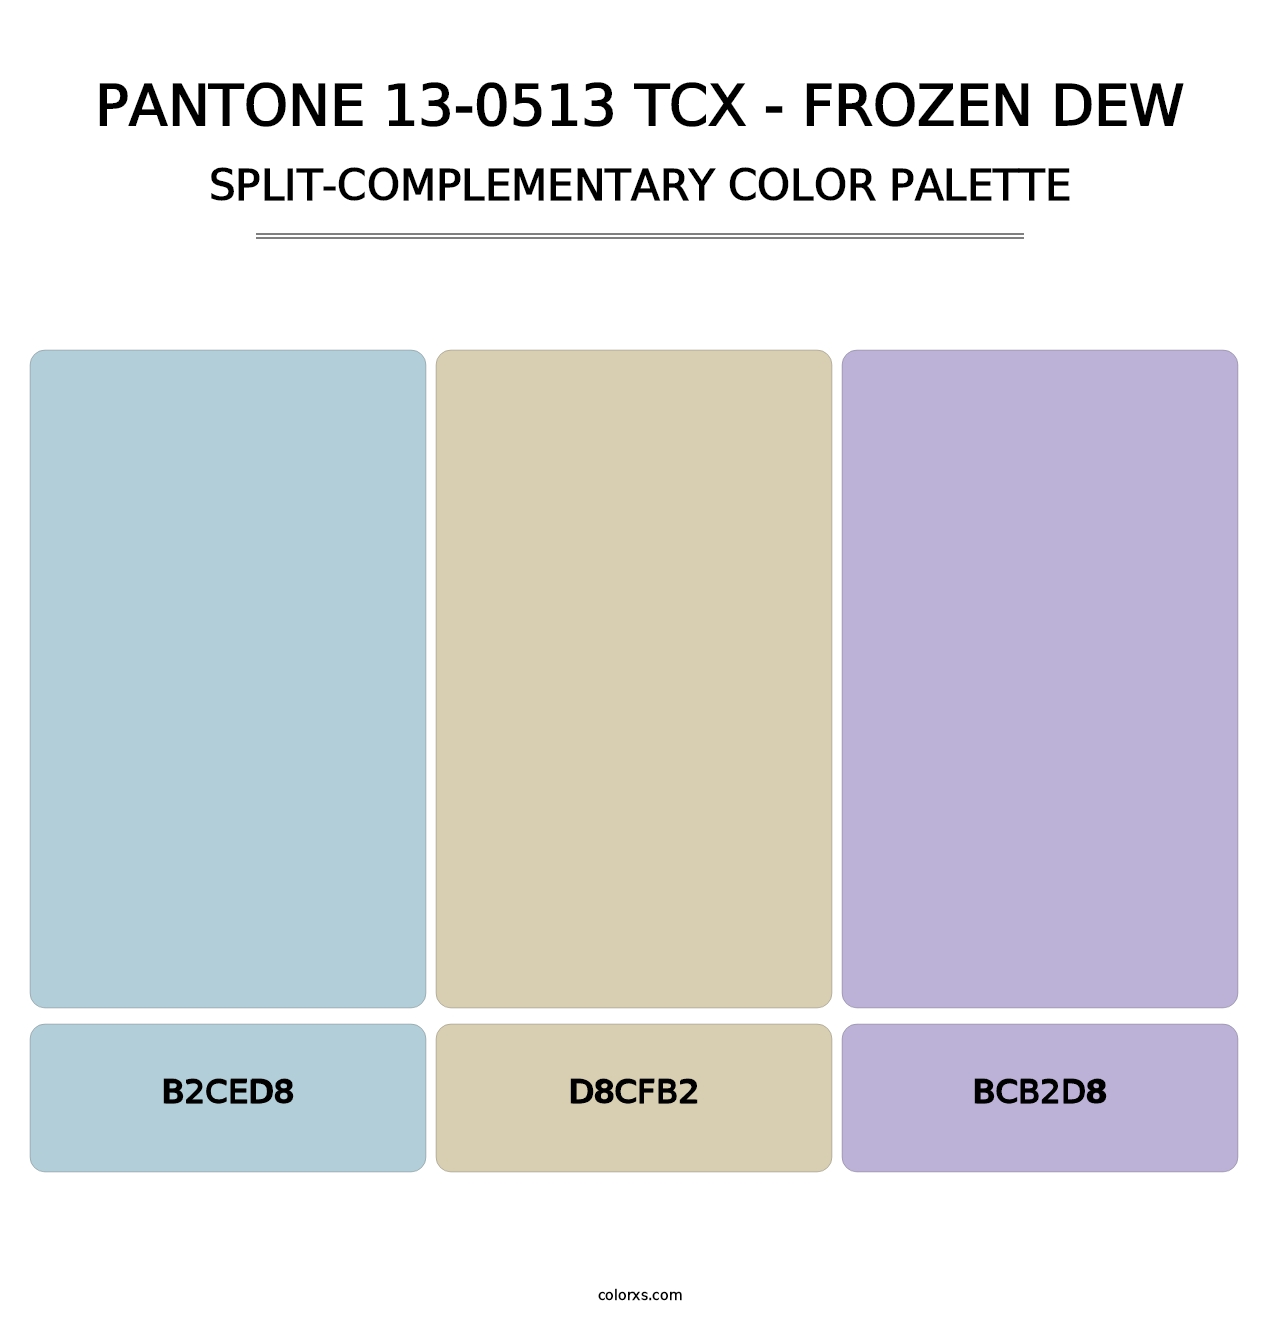 PANTONE 13-0513 TCX - Frozen Dew - Split-Complementary Color Palette